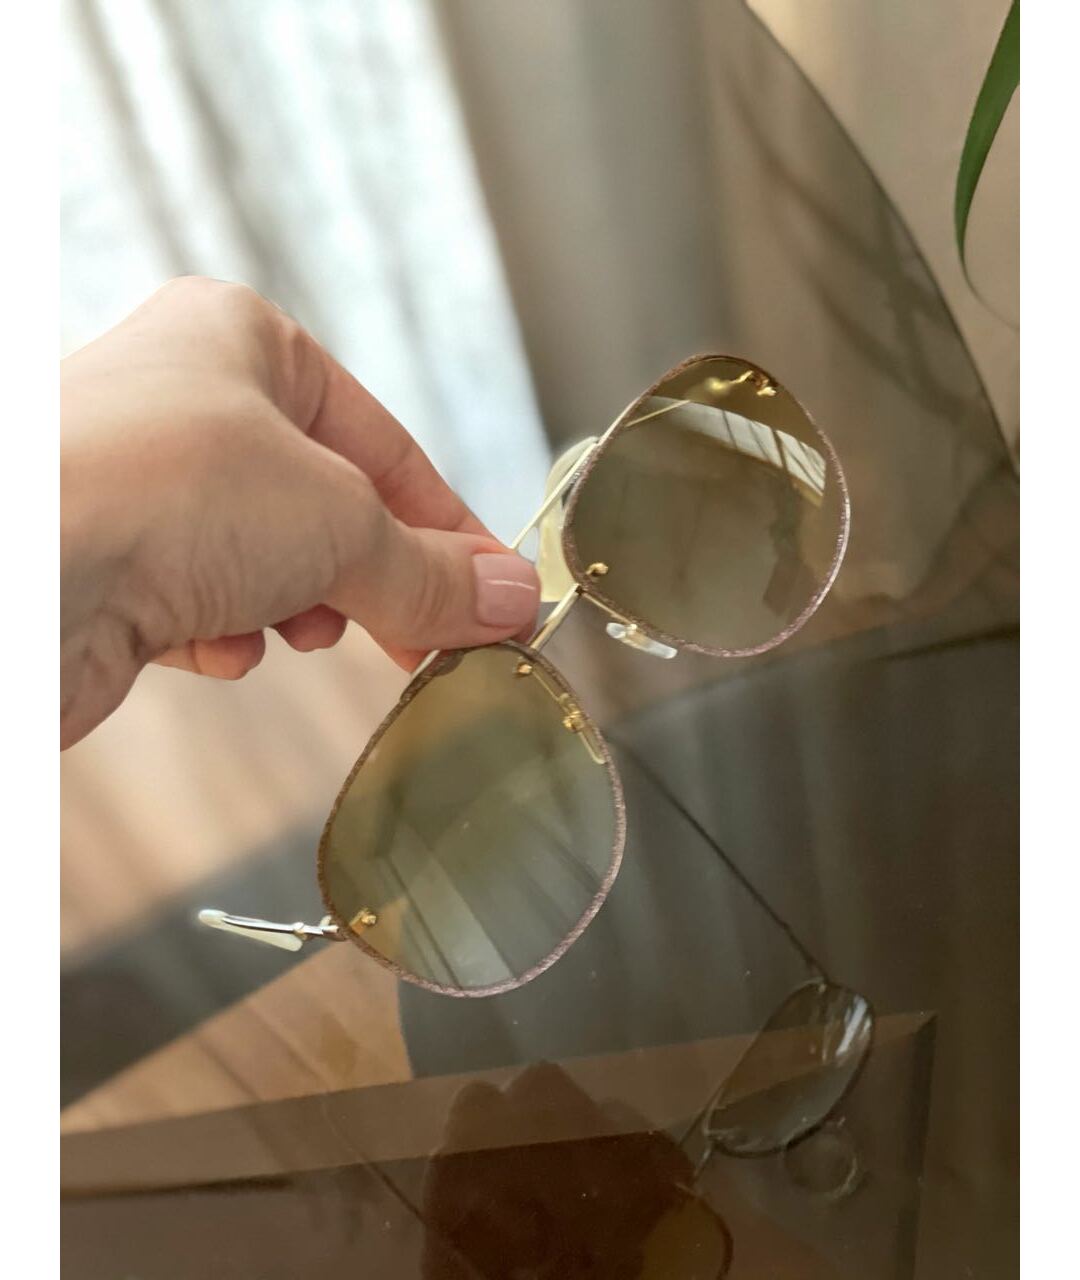 GUCCI Золотые металлические солнцезащитные очки, фото 3